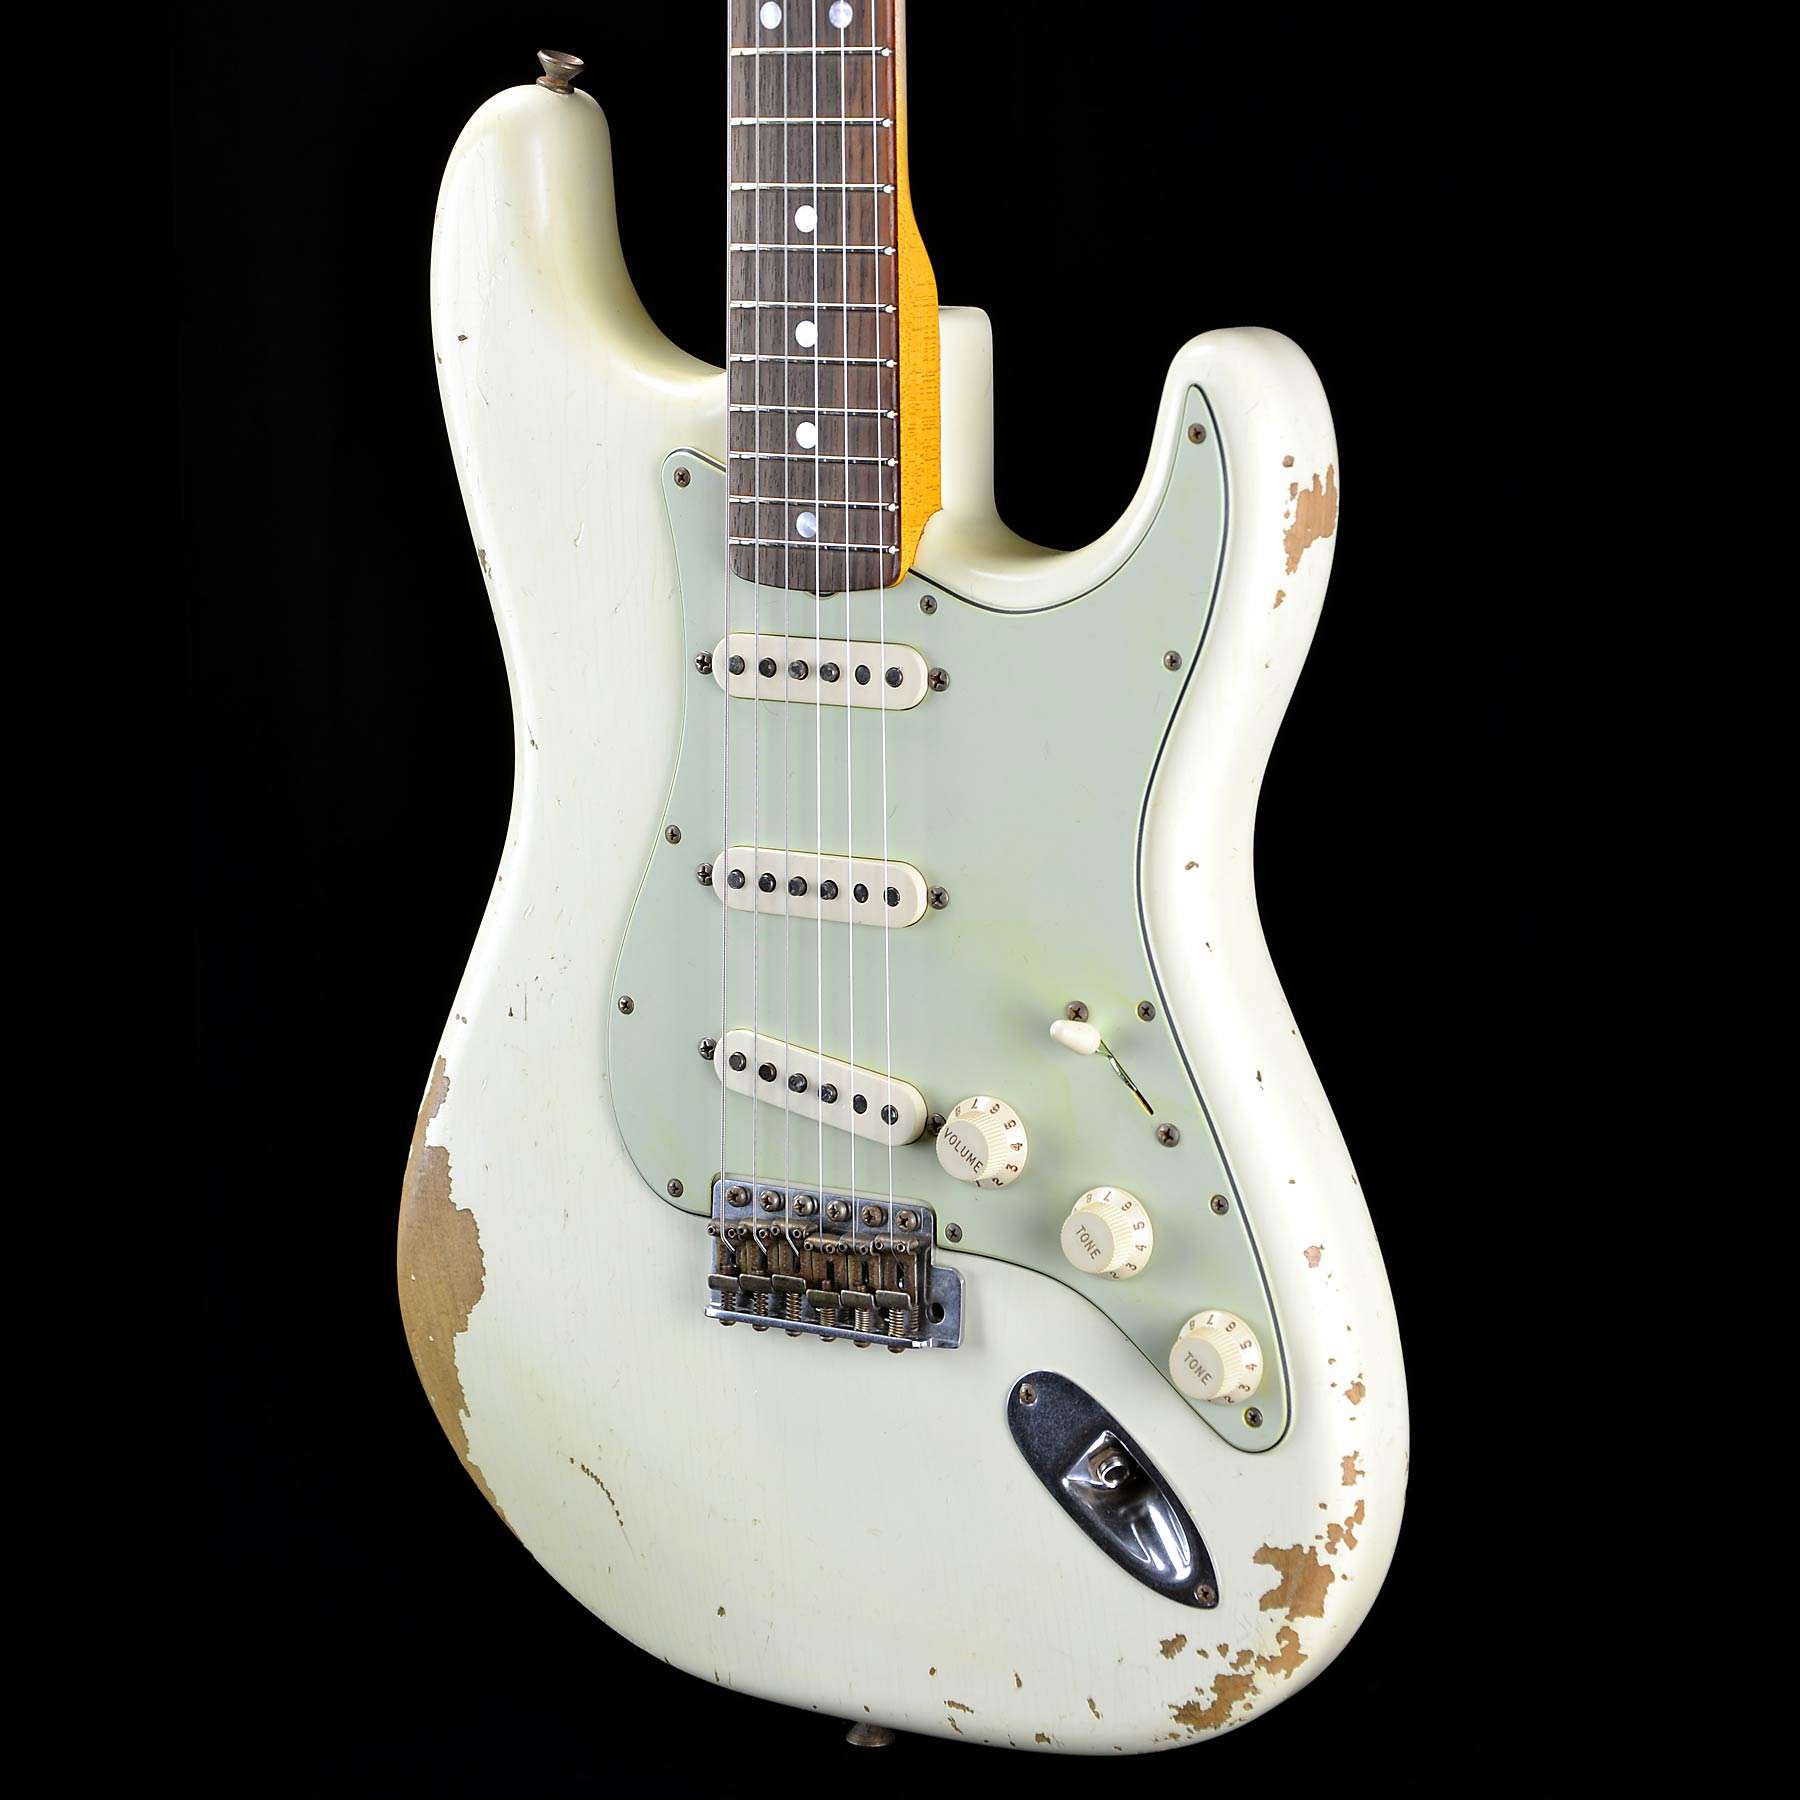 White stratocaster. Fender Stratocaster Custom shop Neck. Fender Custom shop Vintage Custom Stratocaster. Fender Japan Stratocaster Flame Maple Neck. "Джордж Харрисон Фендер стратокастер".